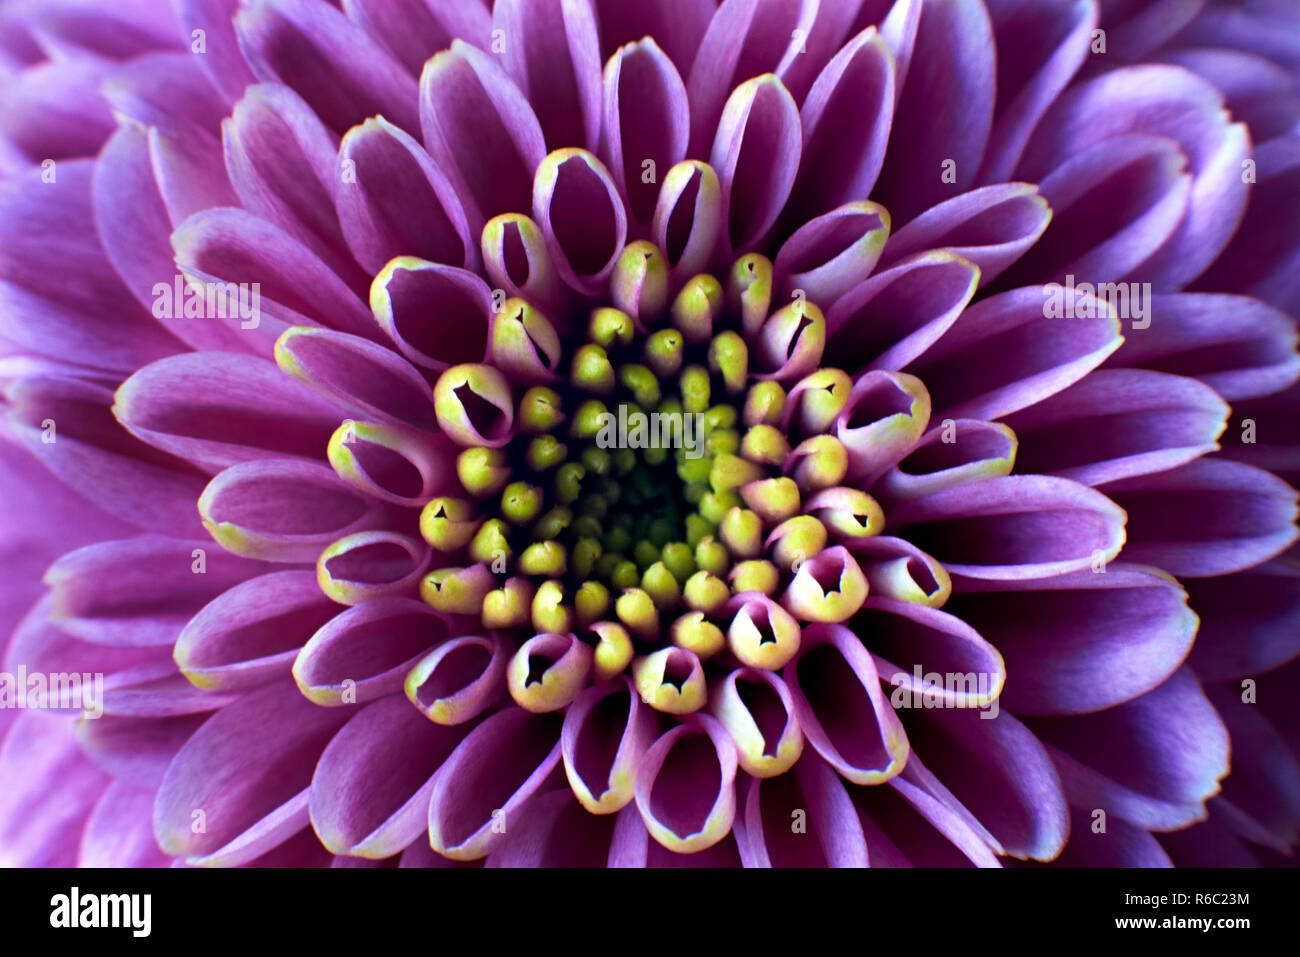 Nahaufnahme Foto von lila Chrysanthemum morifolium Blume zeigt die Staubgefäße und Blütenblätter Stockfoto